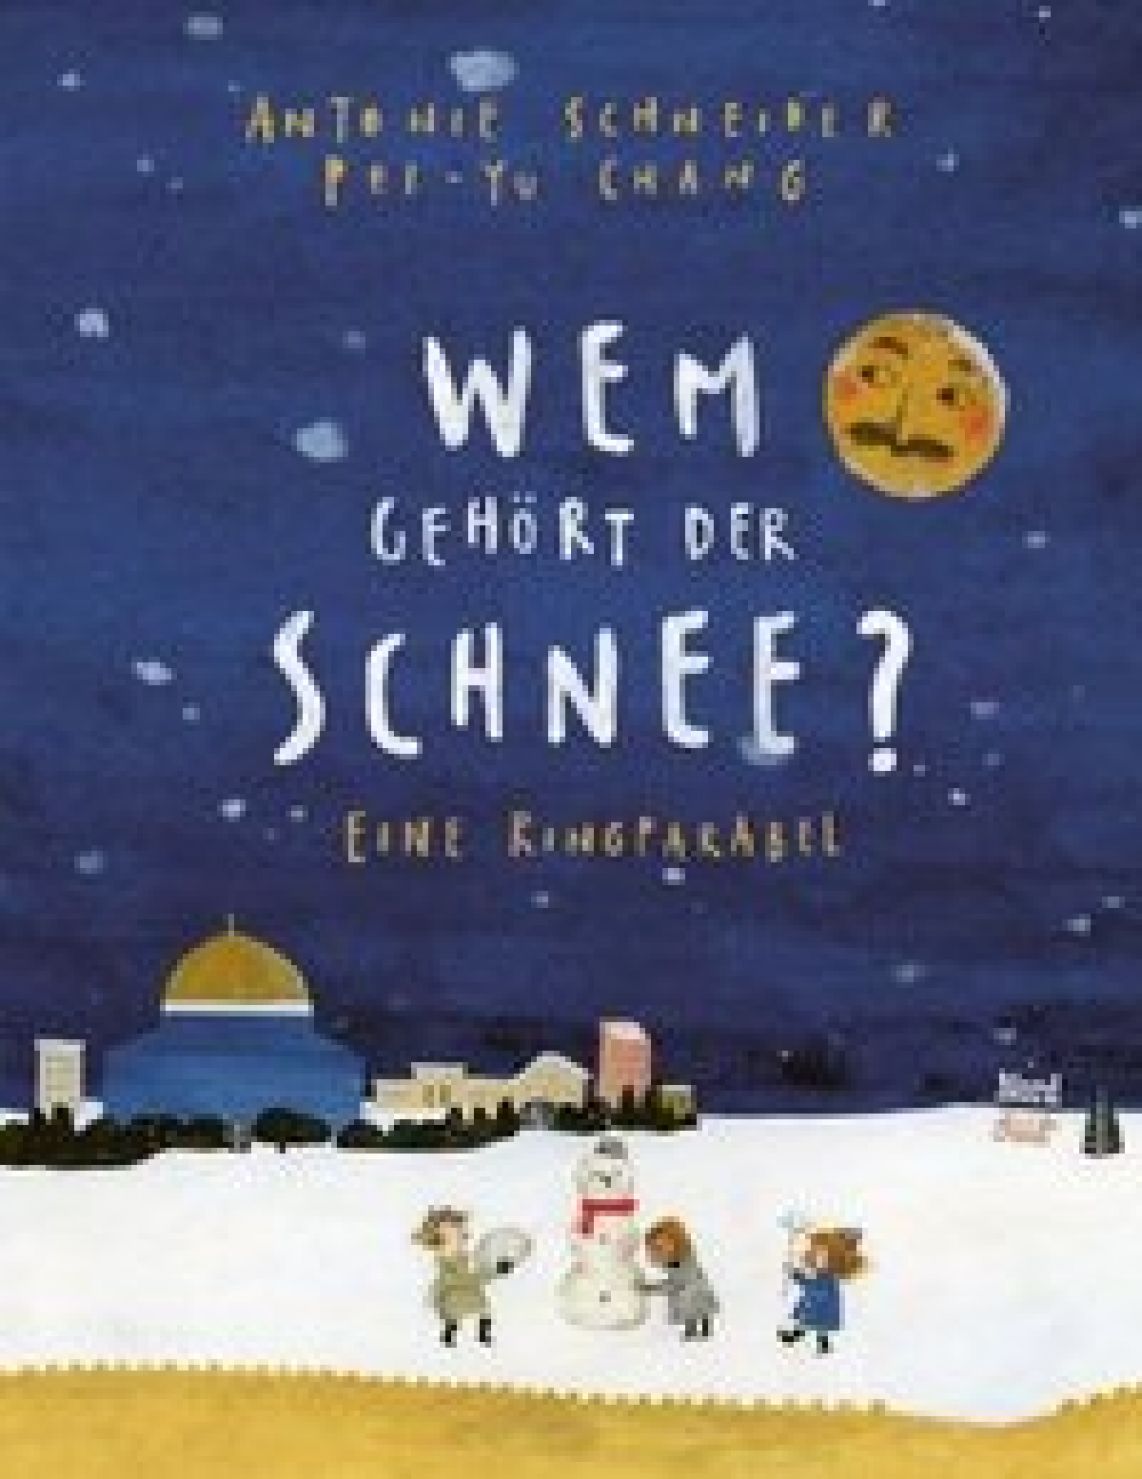 Schneider, Antonie "Wem gehört der Schnee"